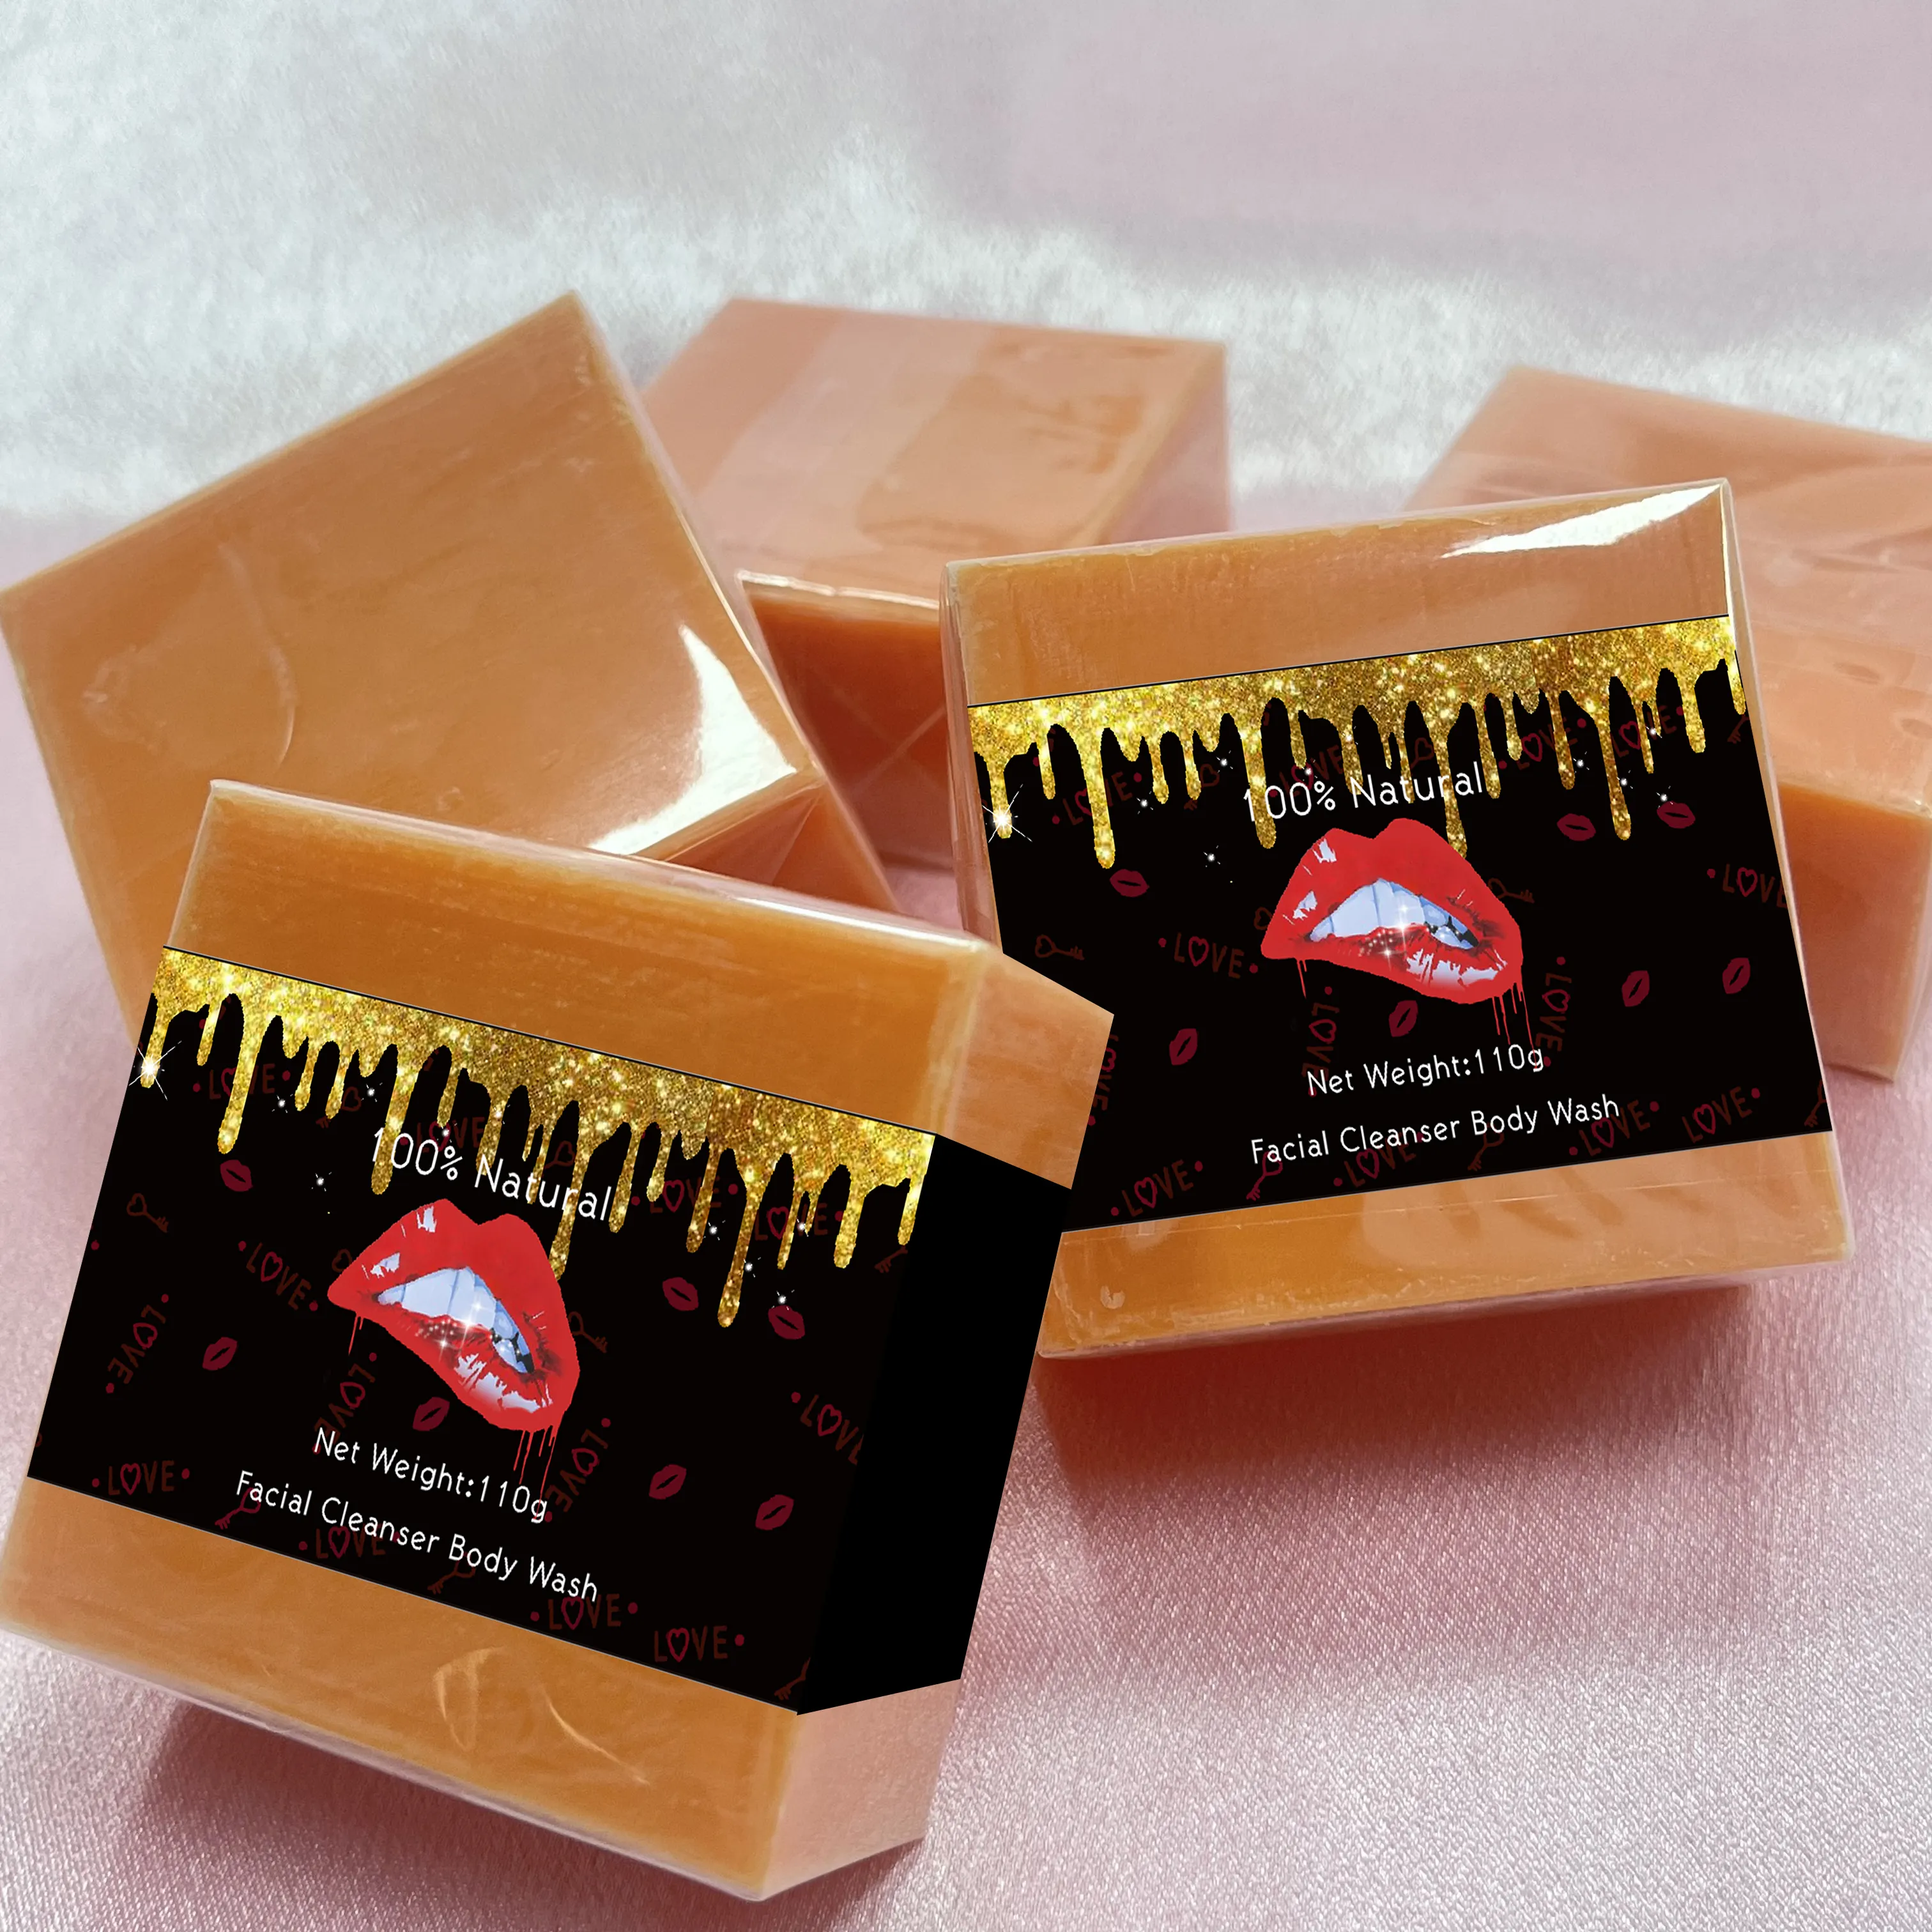 Migliore qualità personalizza logo sapone turmetico vitamina E sapone anti acne sbiancante sapone